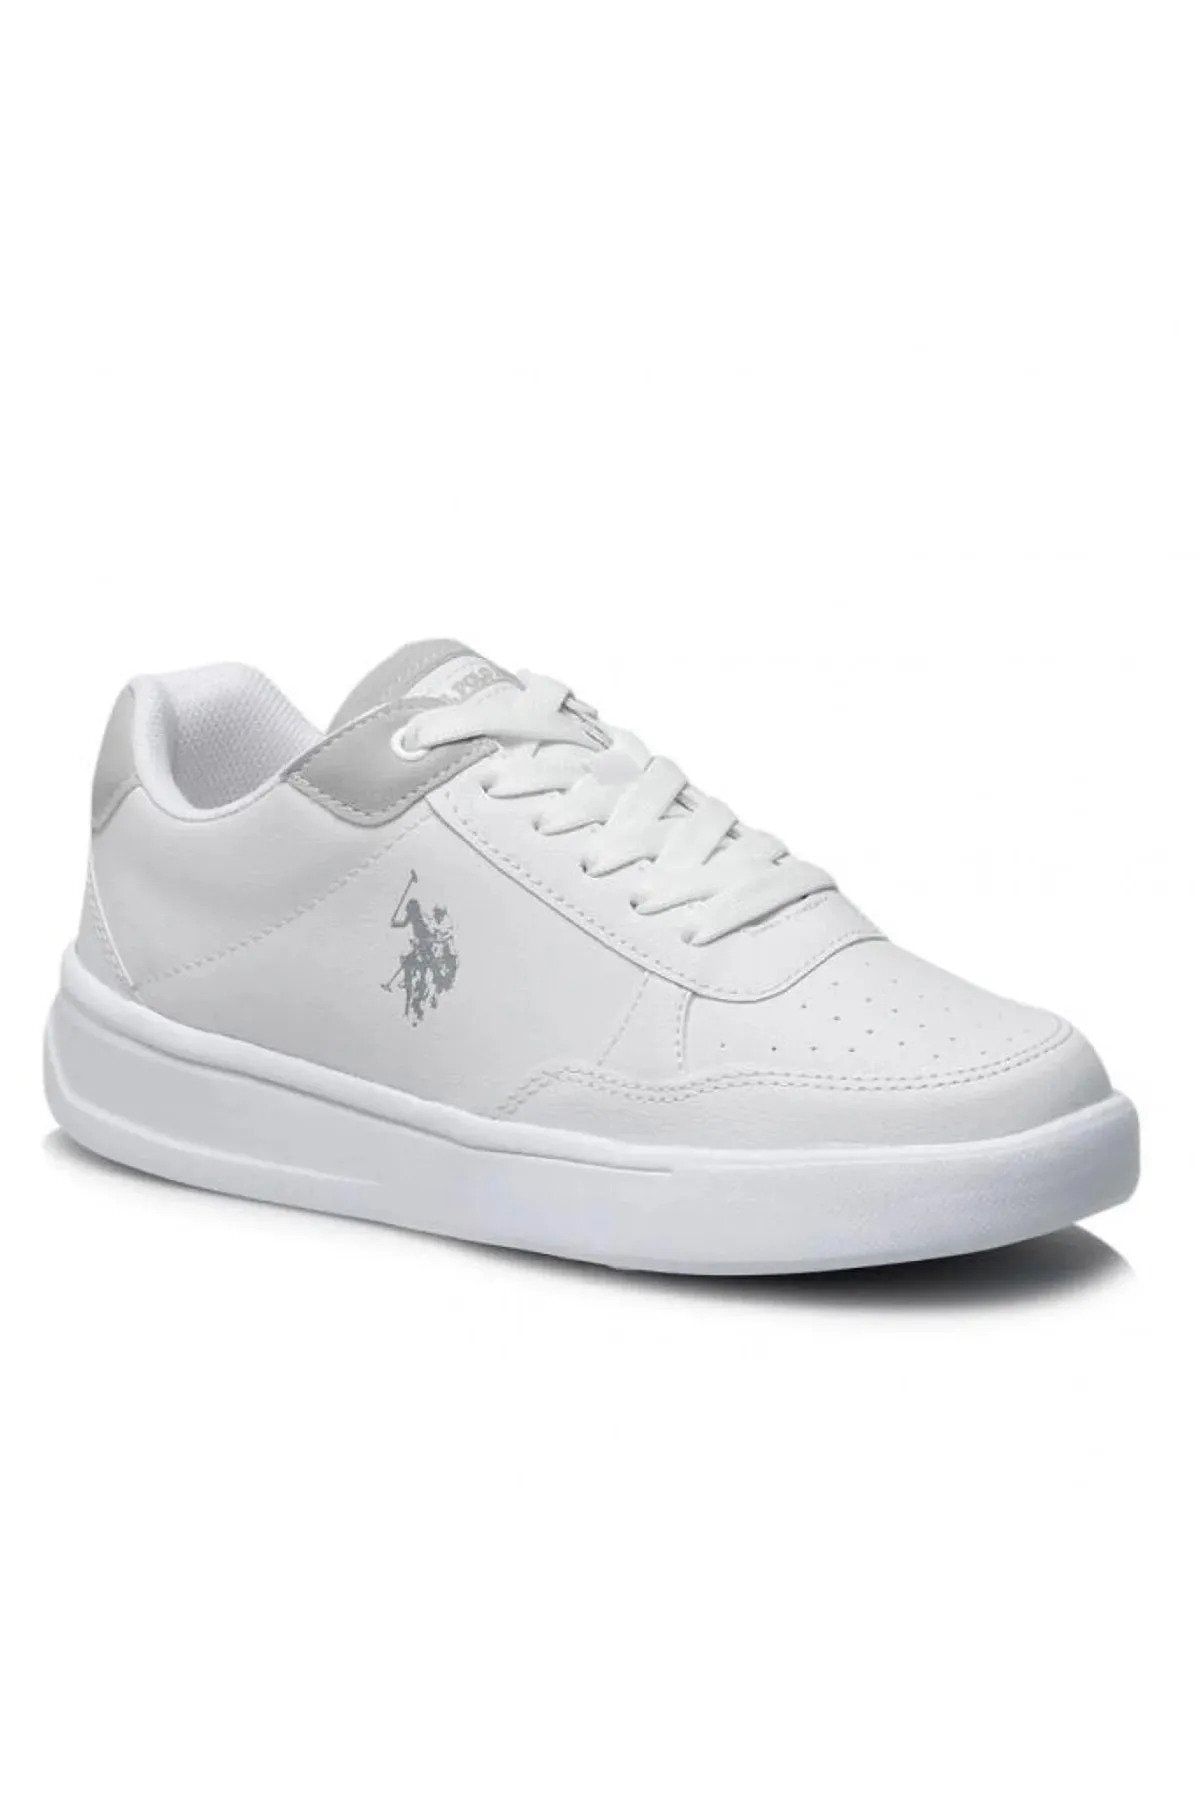 U.S. Polo Assn. Kadın Beyaz Ayakkabı Sneaker Elta 3fx